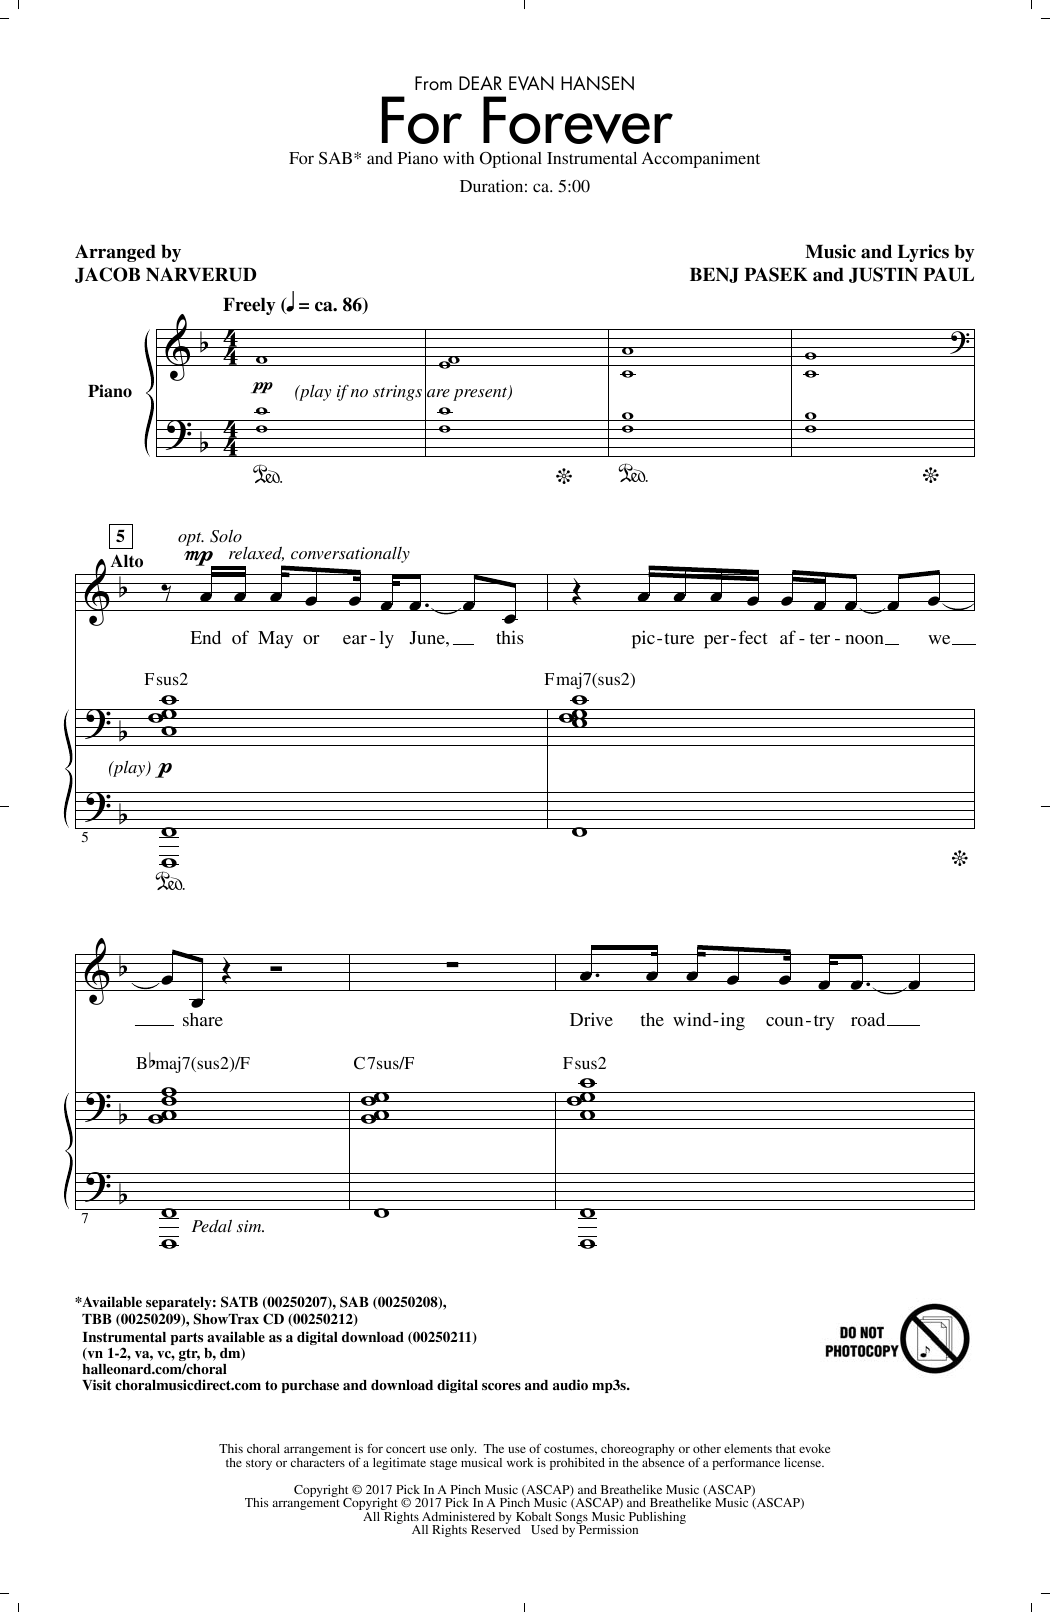 Download Pasek & Paul For Forever (from Dear Evan Hansen) (ar Sheet Music